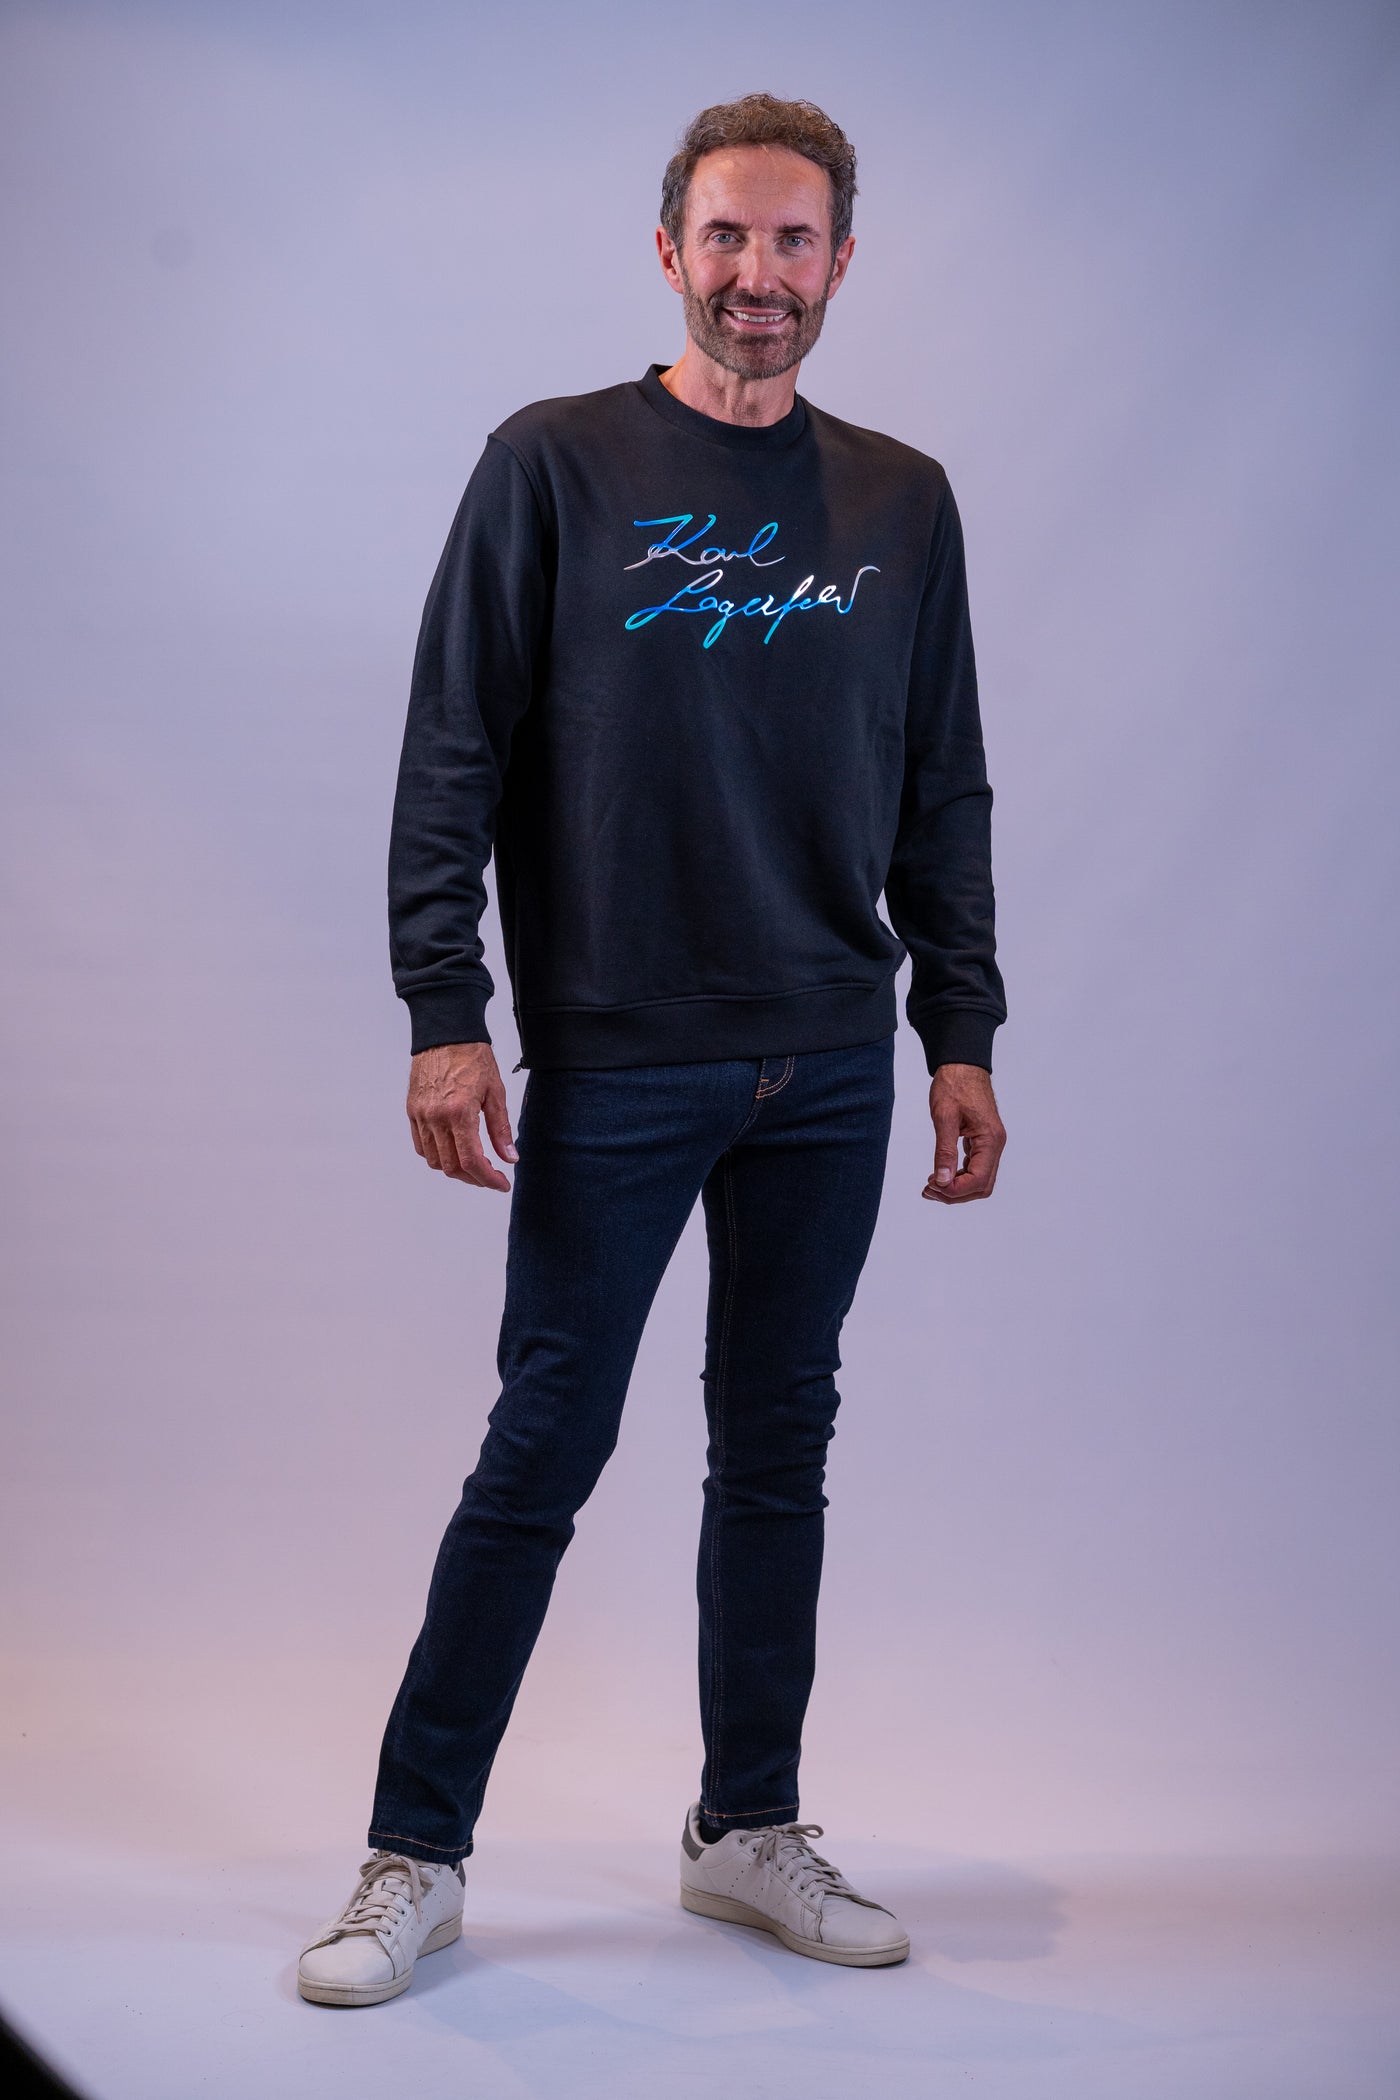 Karl lagerfeld sweatshirt med hvid/blå skrift